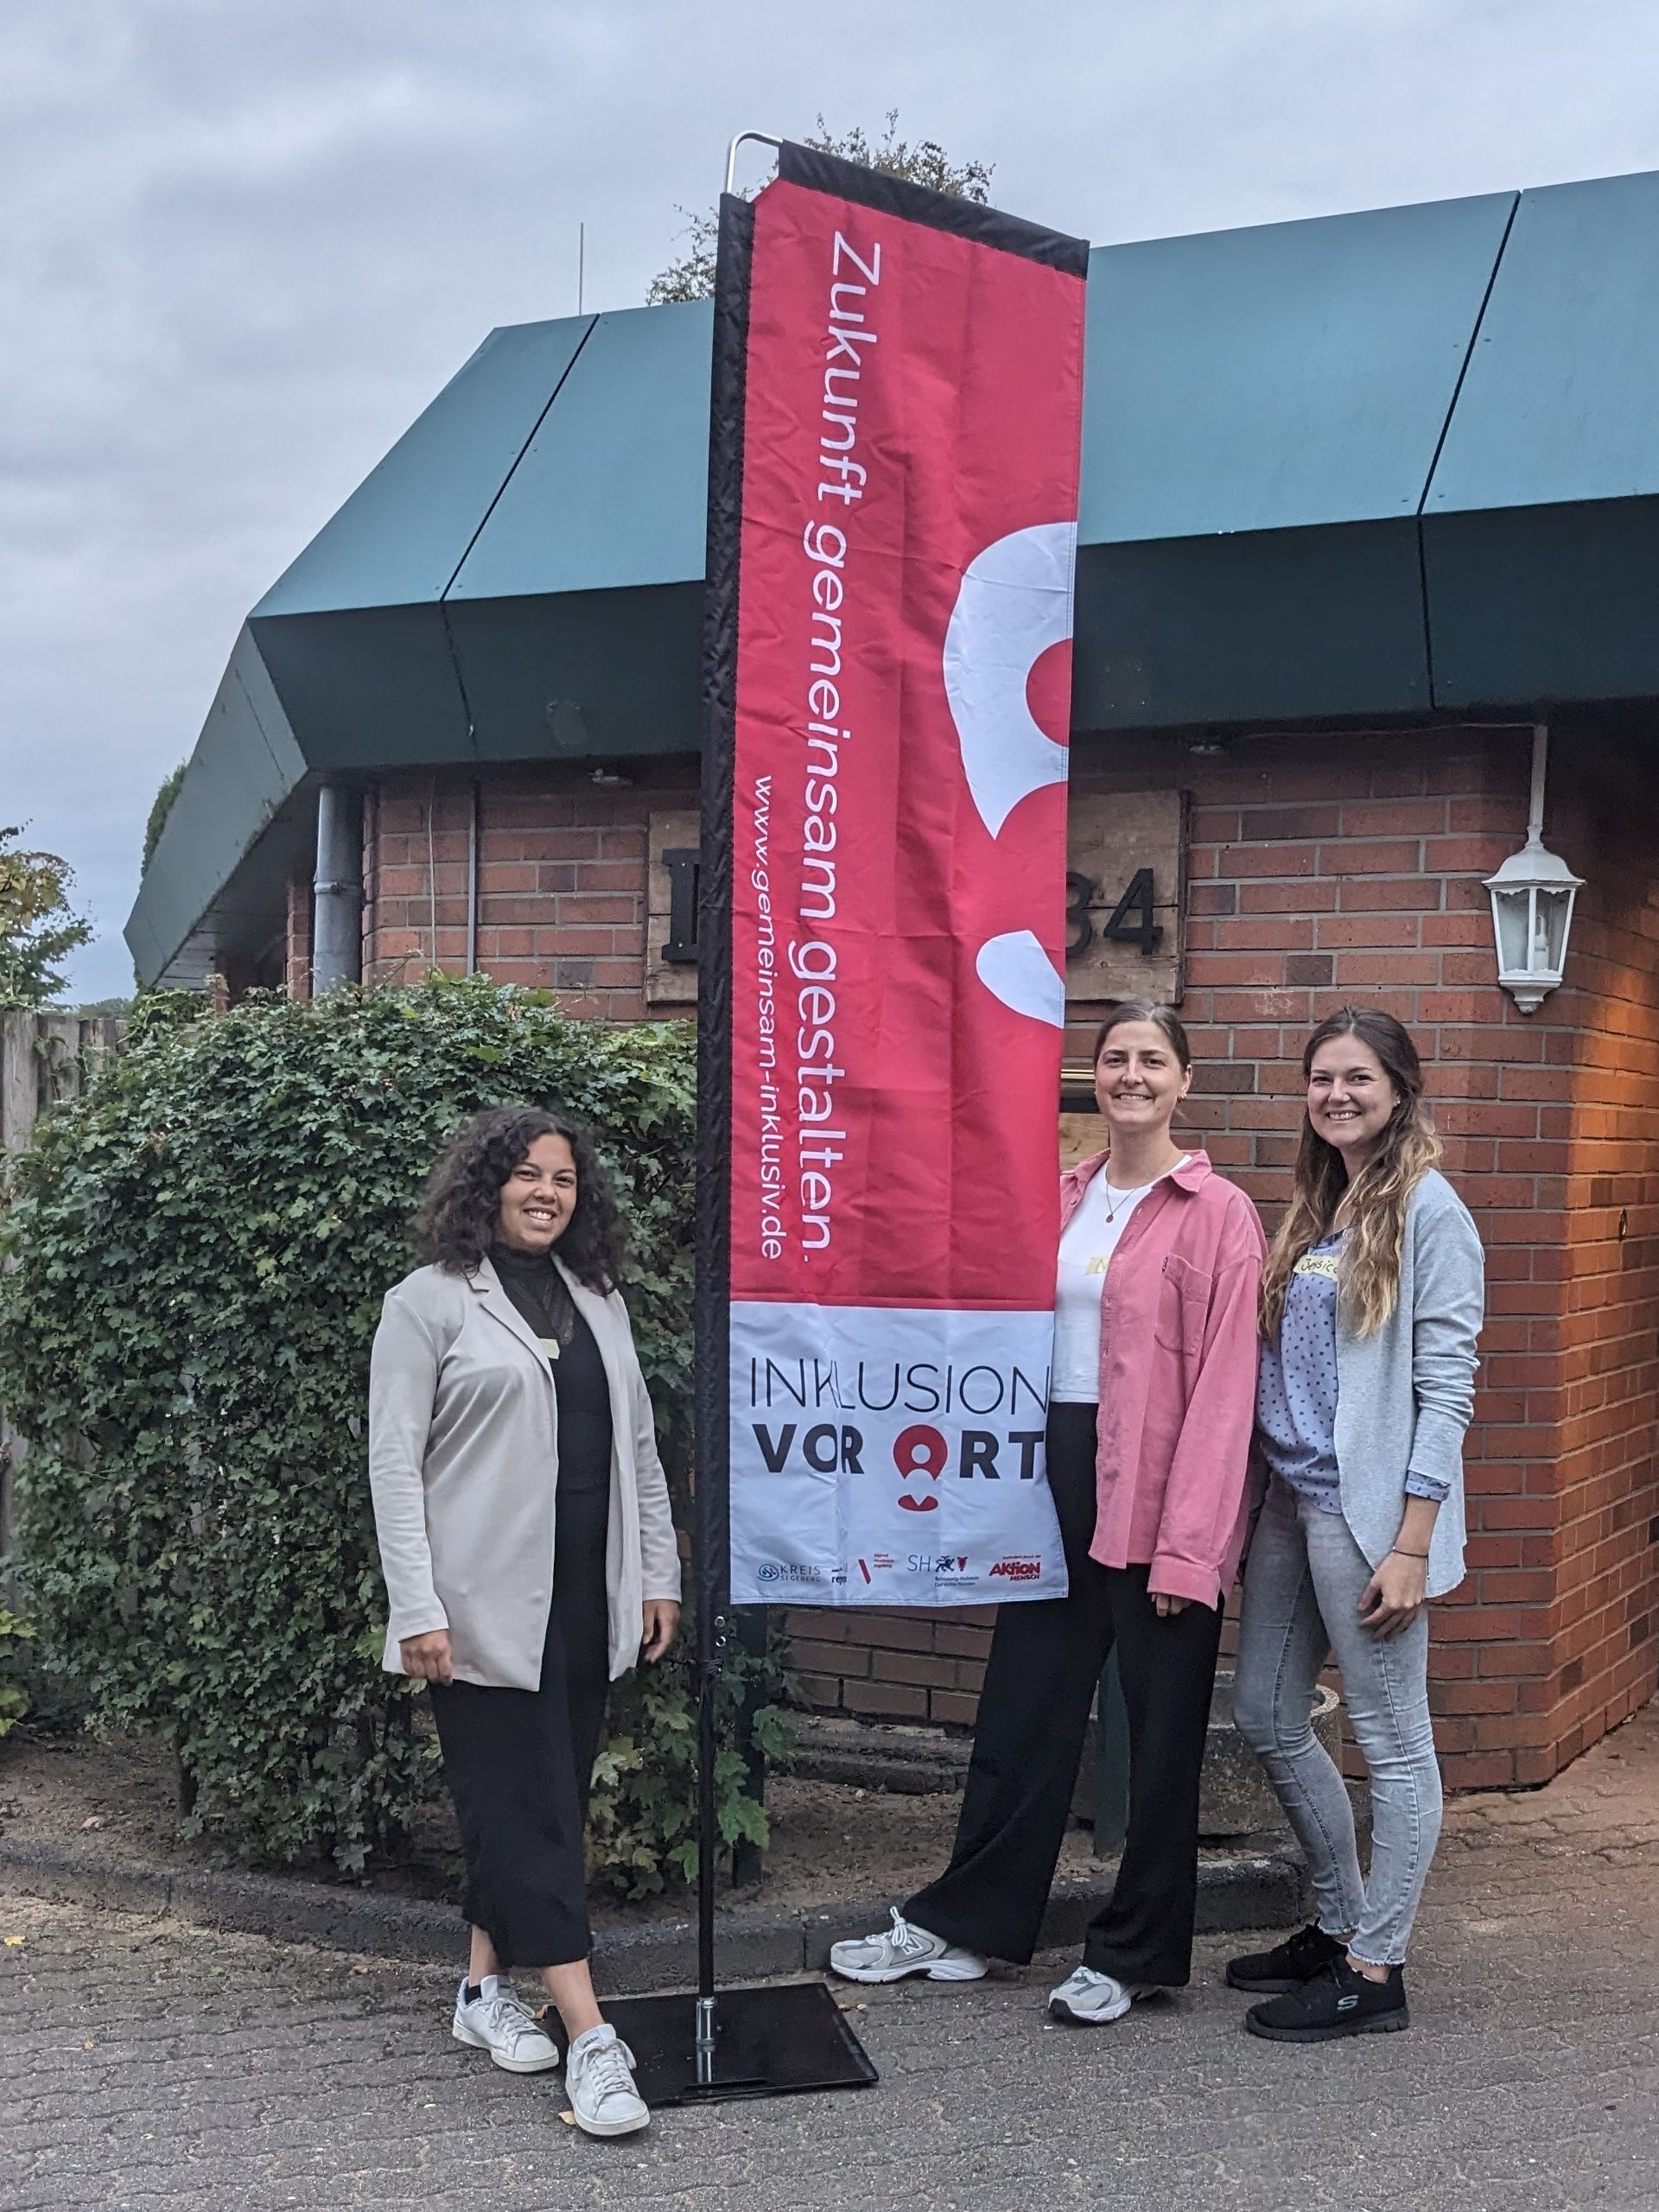 Auf dem Bild sind drei junge Frauen draußen vor einem Haus zu sehen, die den Workshop durchführen. Alle drei lächeln und stehen neben einer großen Fahne mit dem Projektlogo.